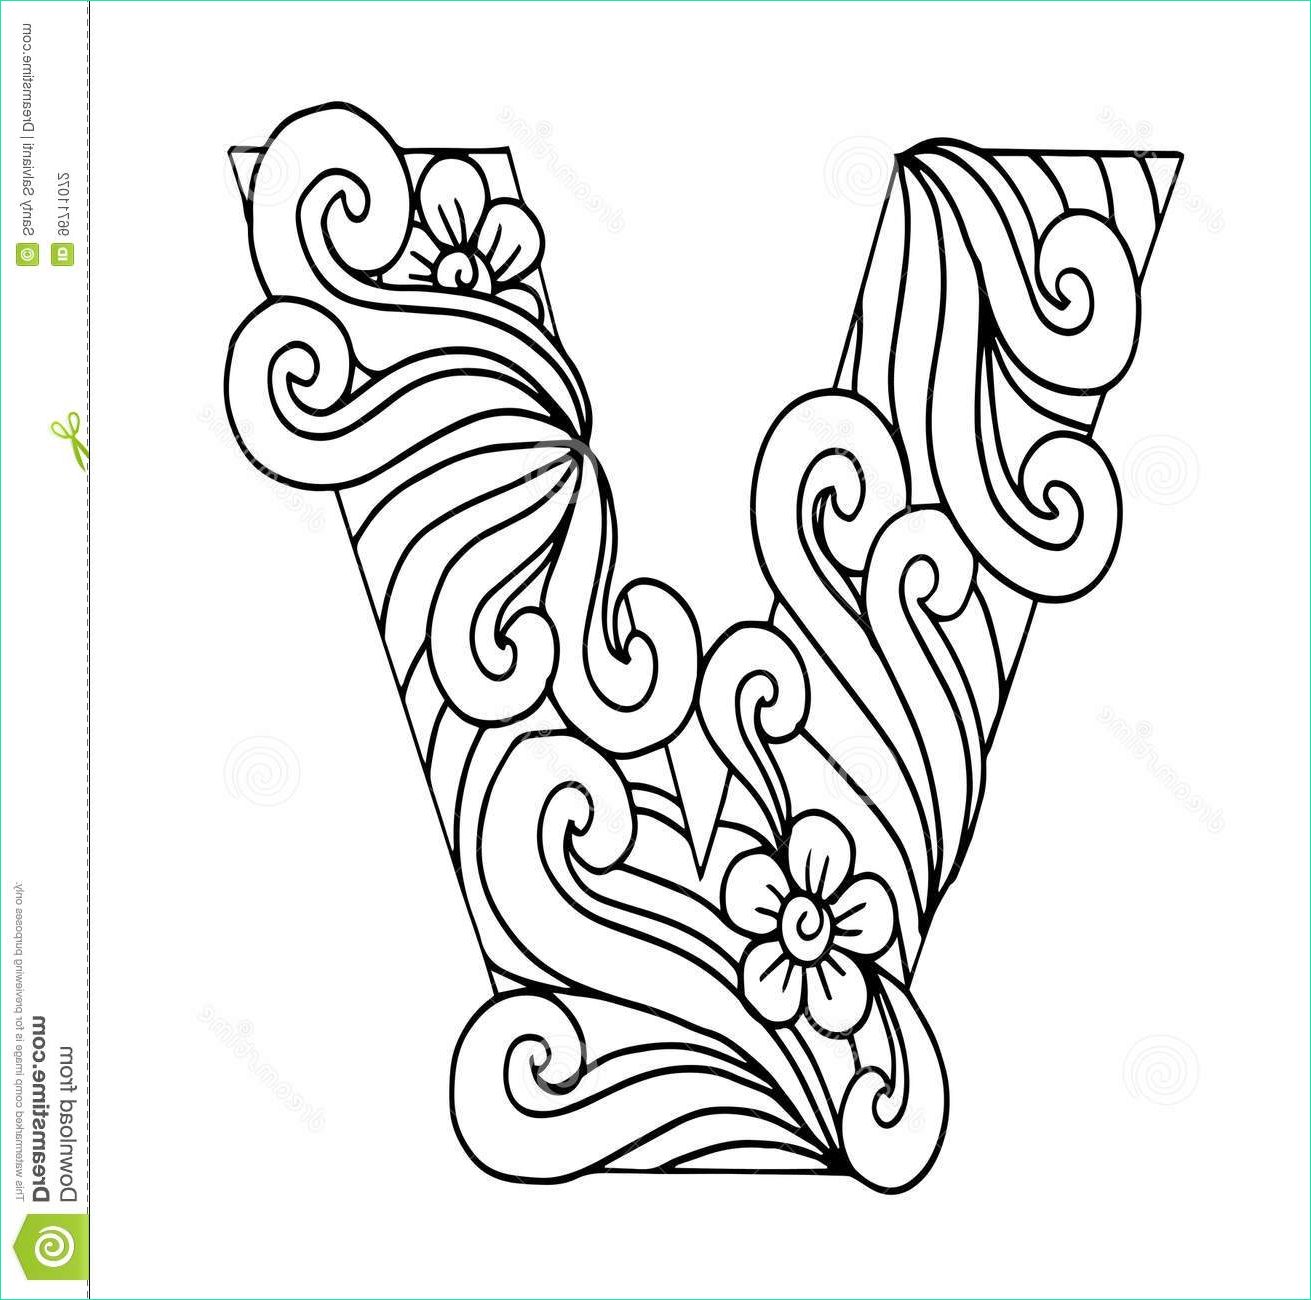 Dessin V Beau Images Zentangle Stylized Alphabet Letter V In Doodle Style